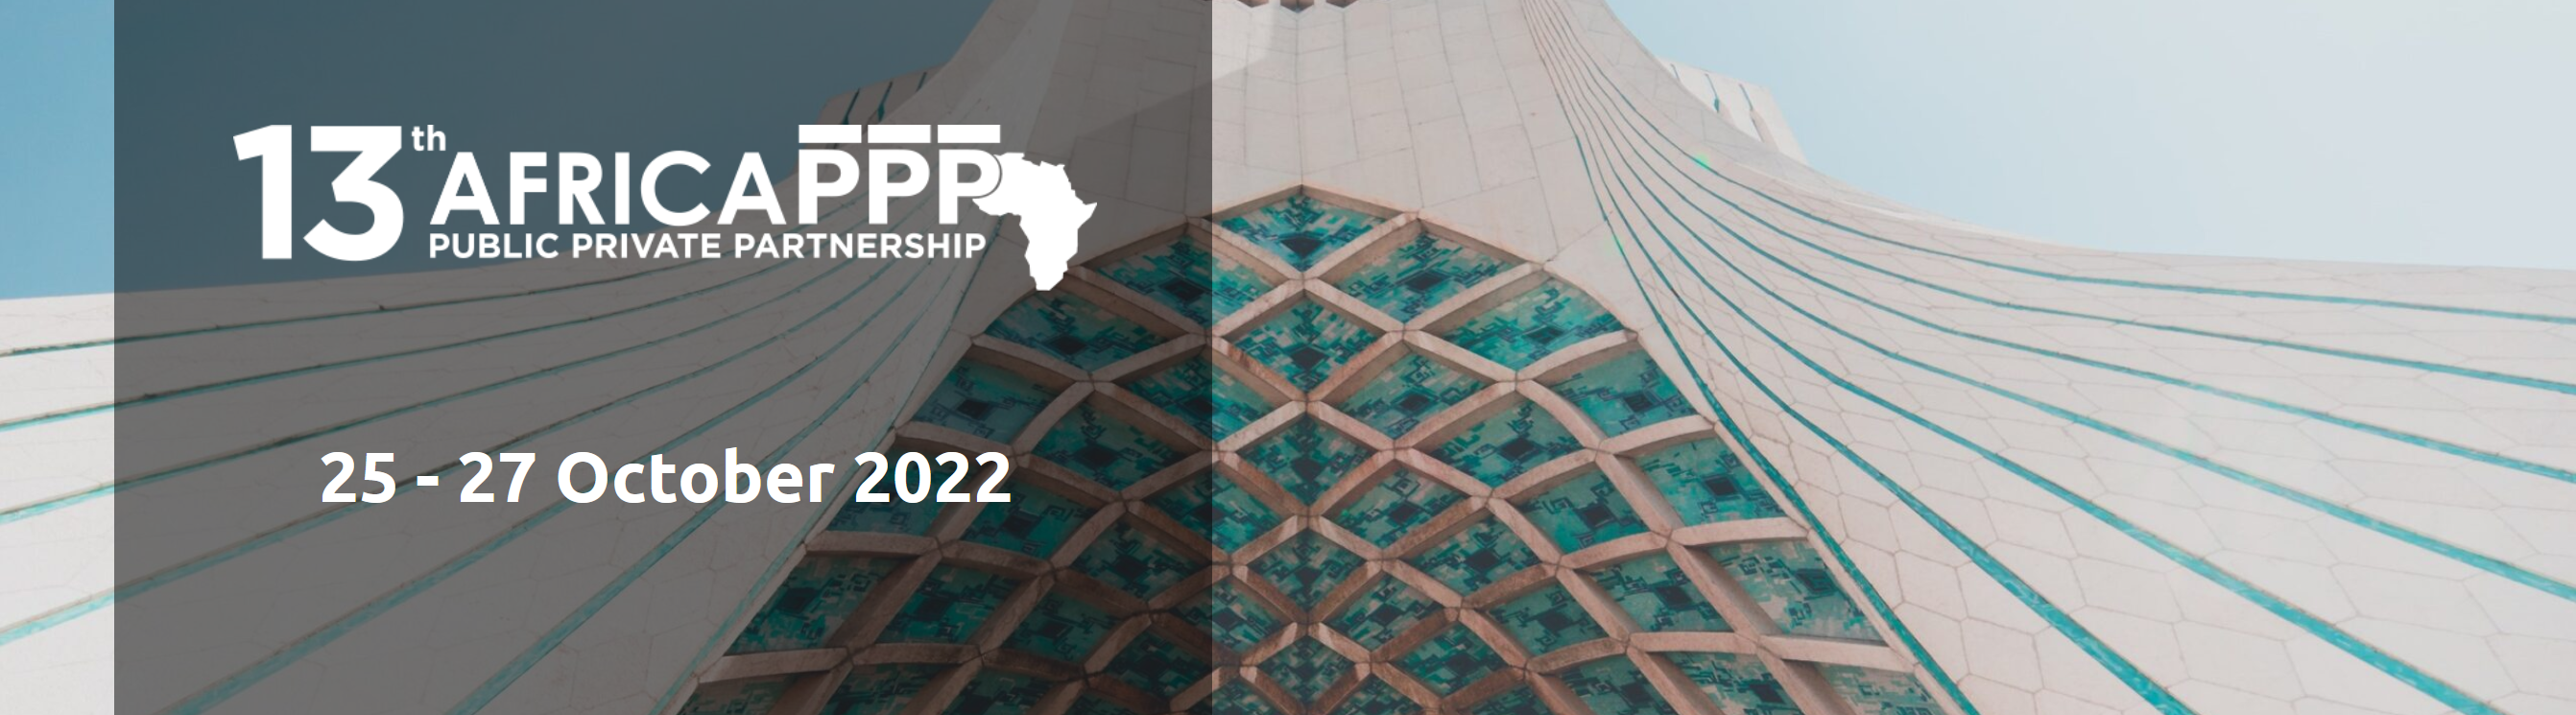 Européens et Africains dresseront un bilan de l’impact des partenariats public-privé lors de la conférence « Africa PPP »